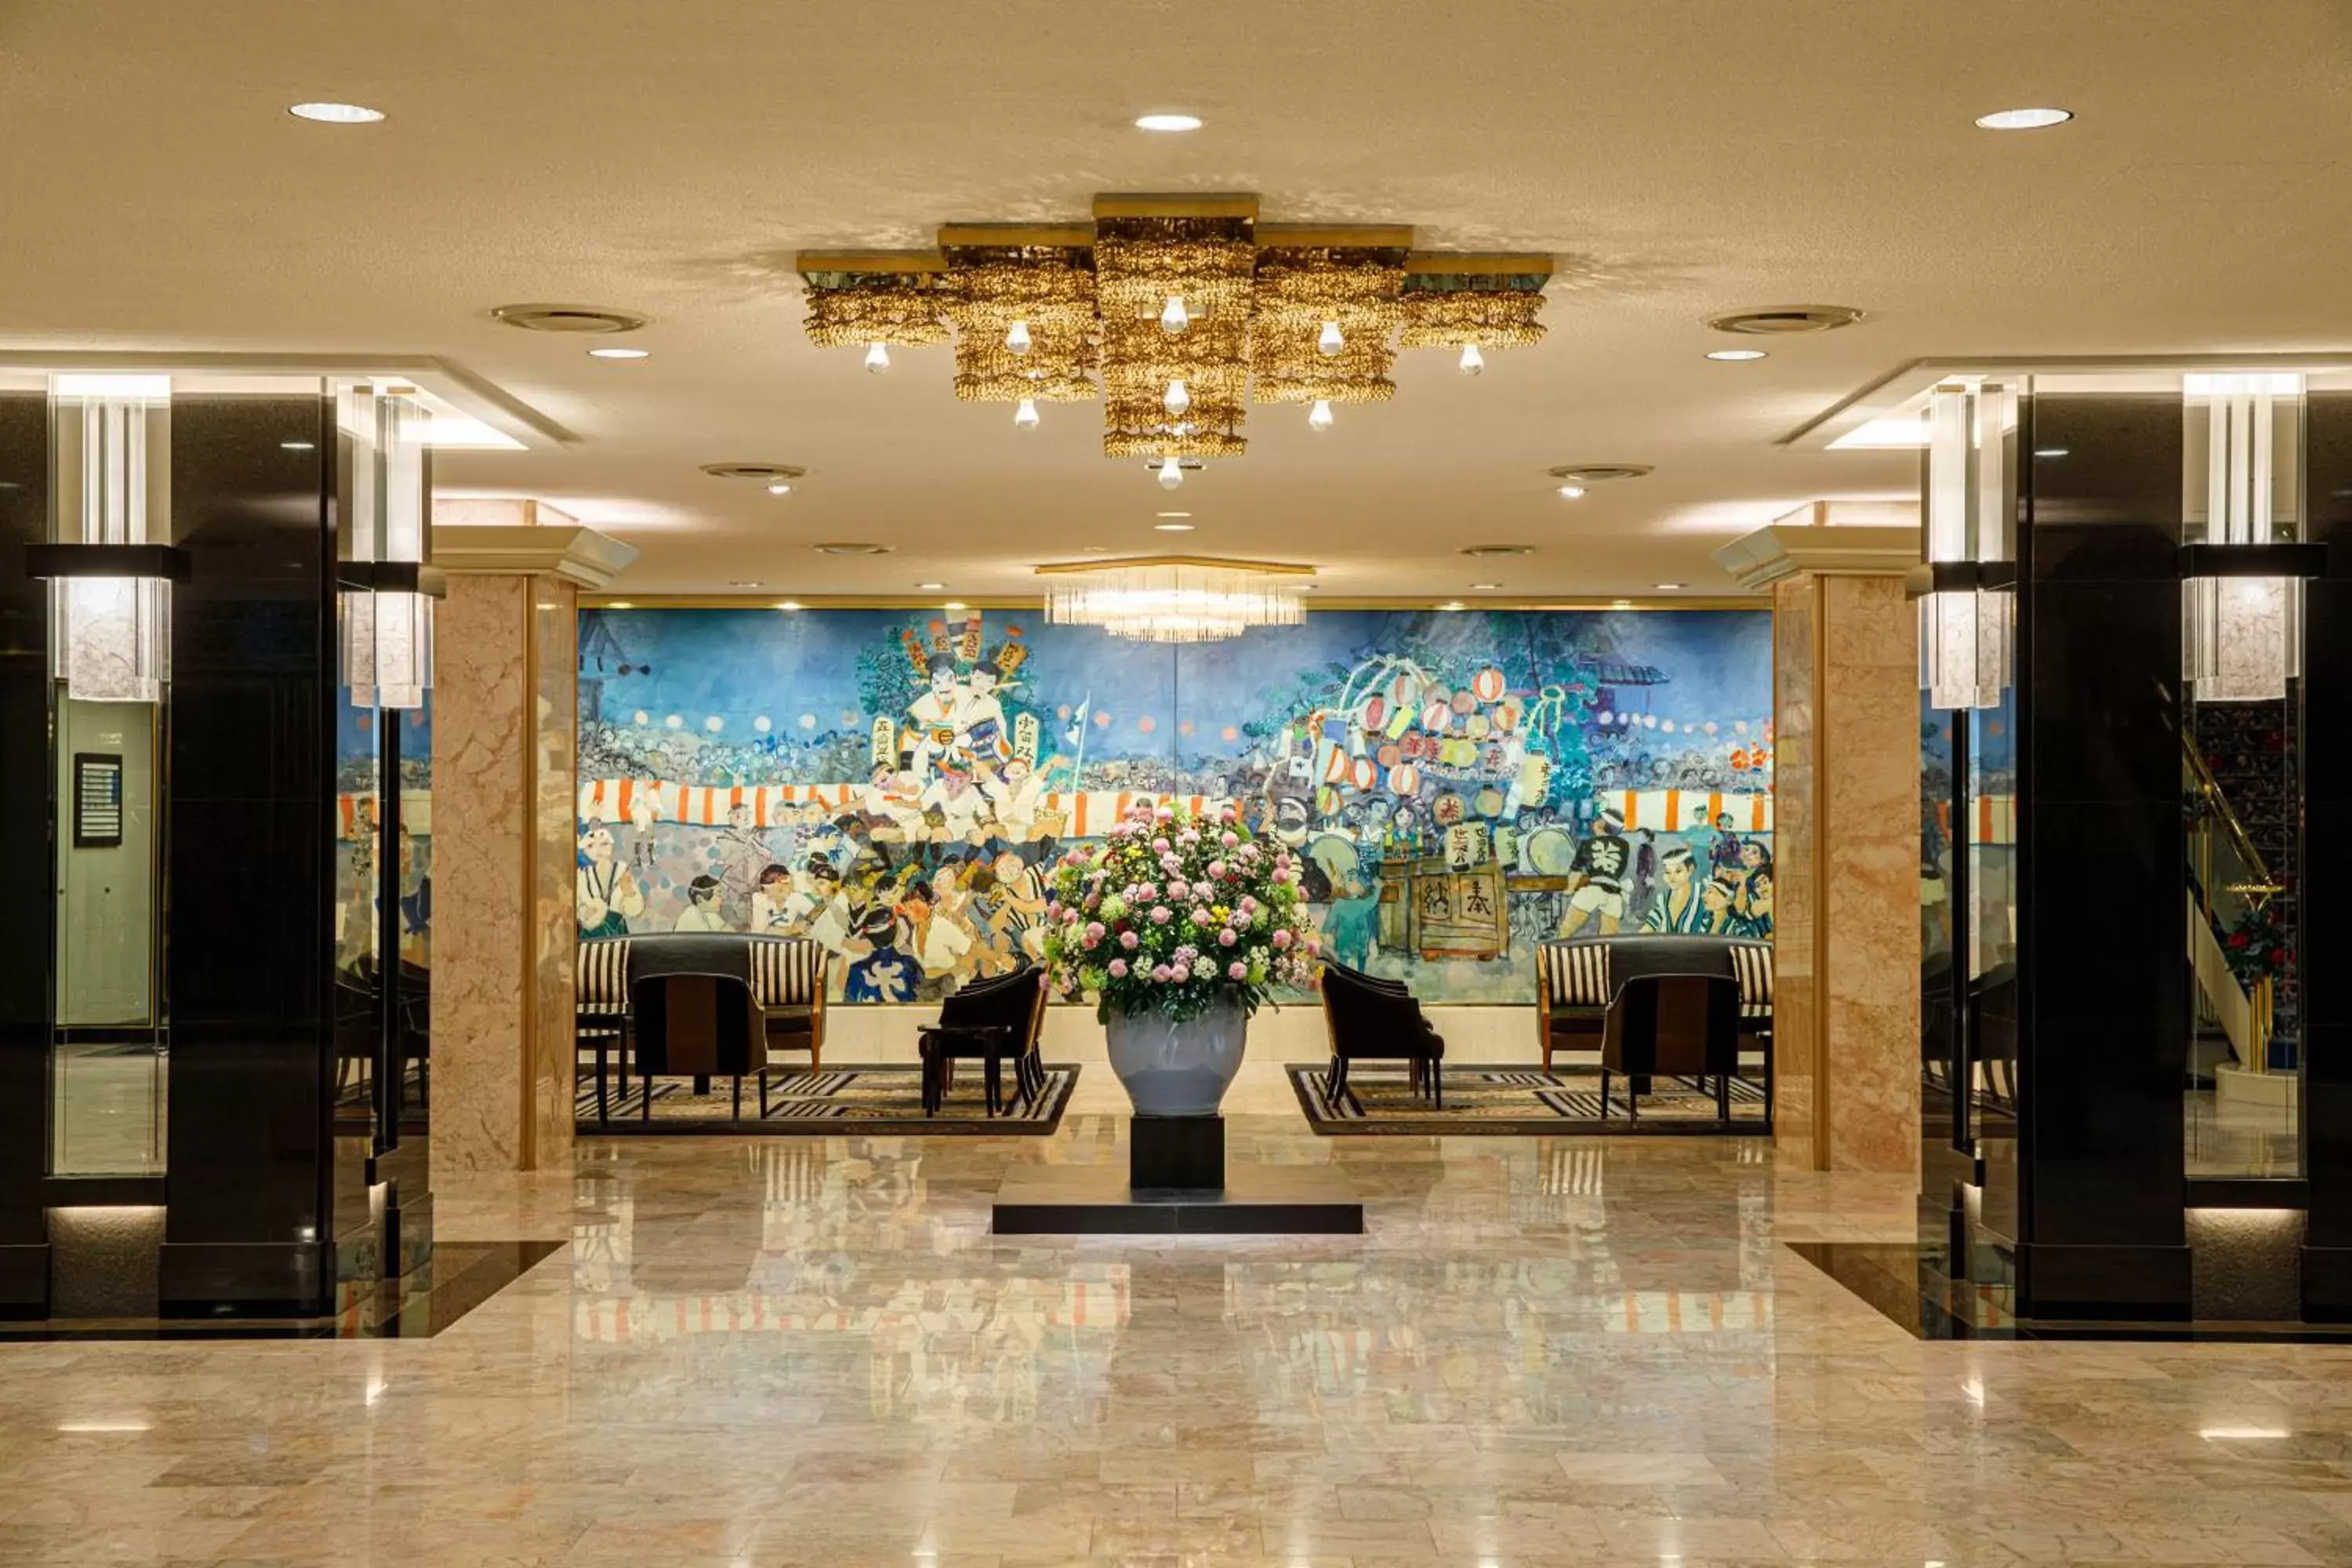 Lobby or reception, Lobby/Reception in Hotel New Otani Hakata